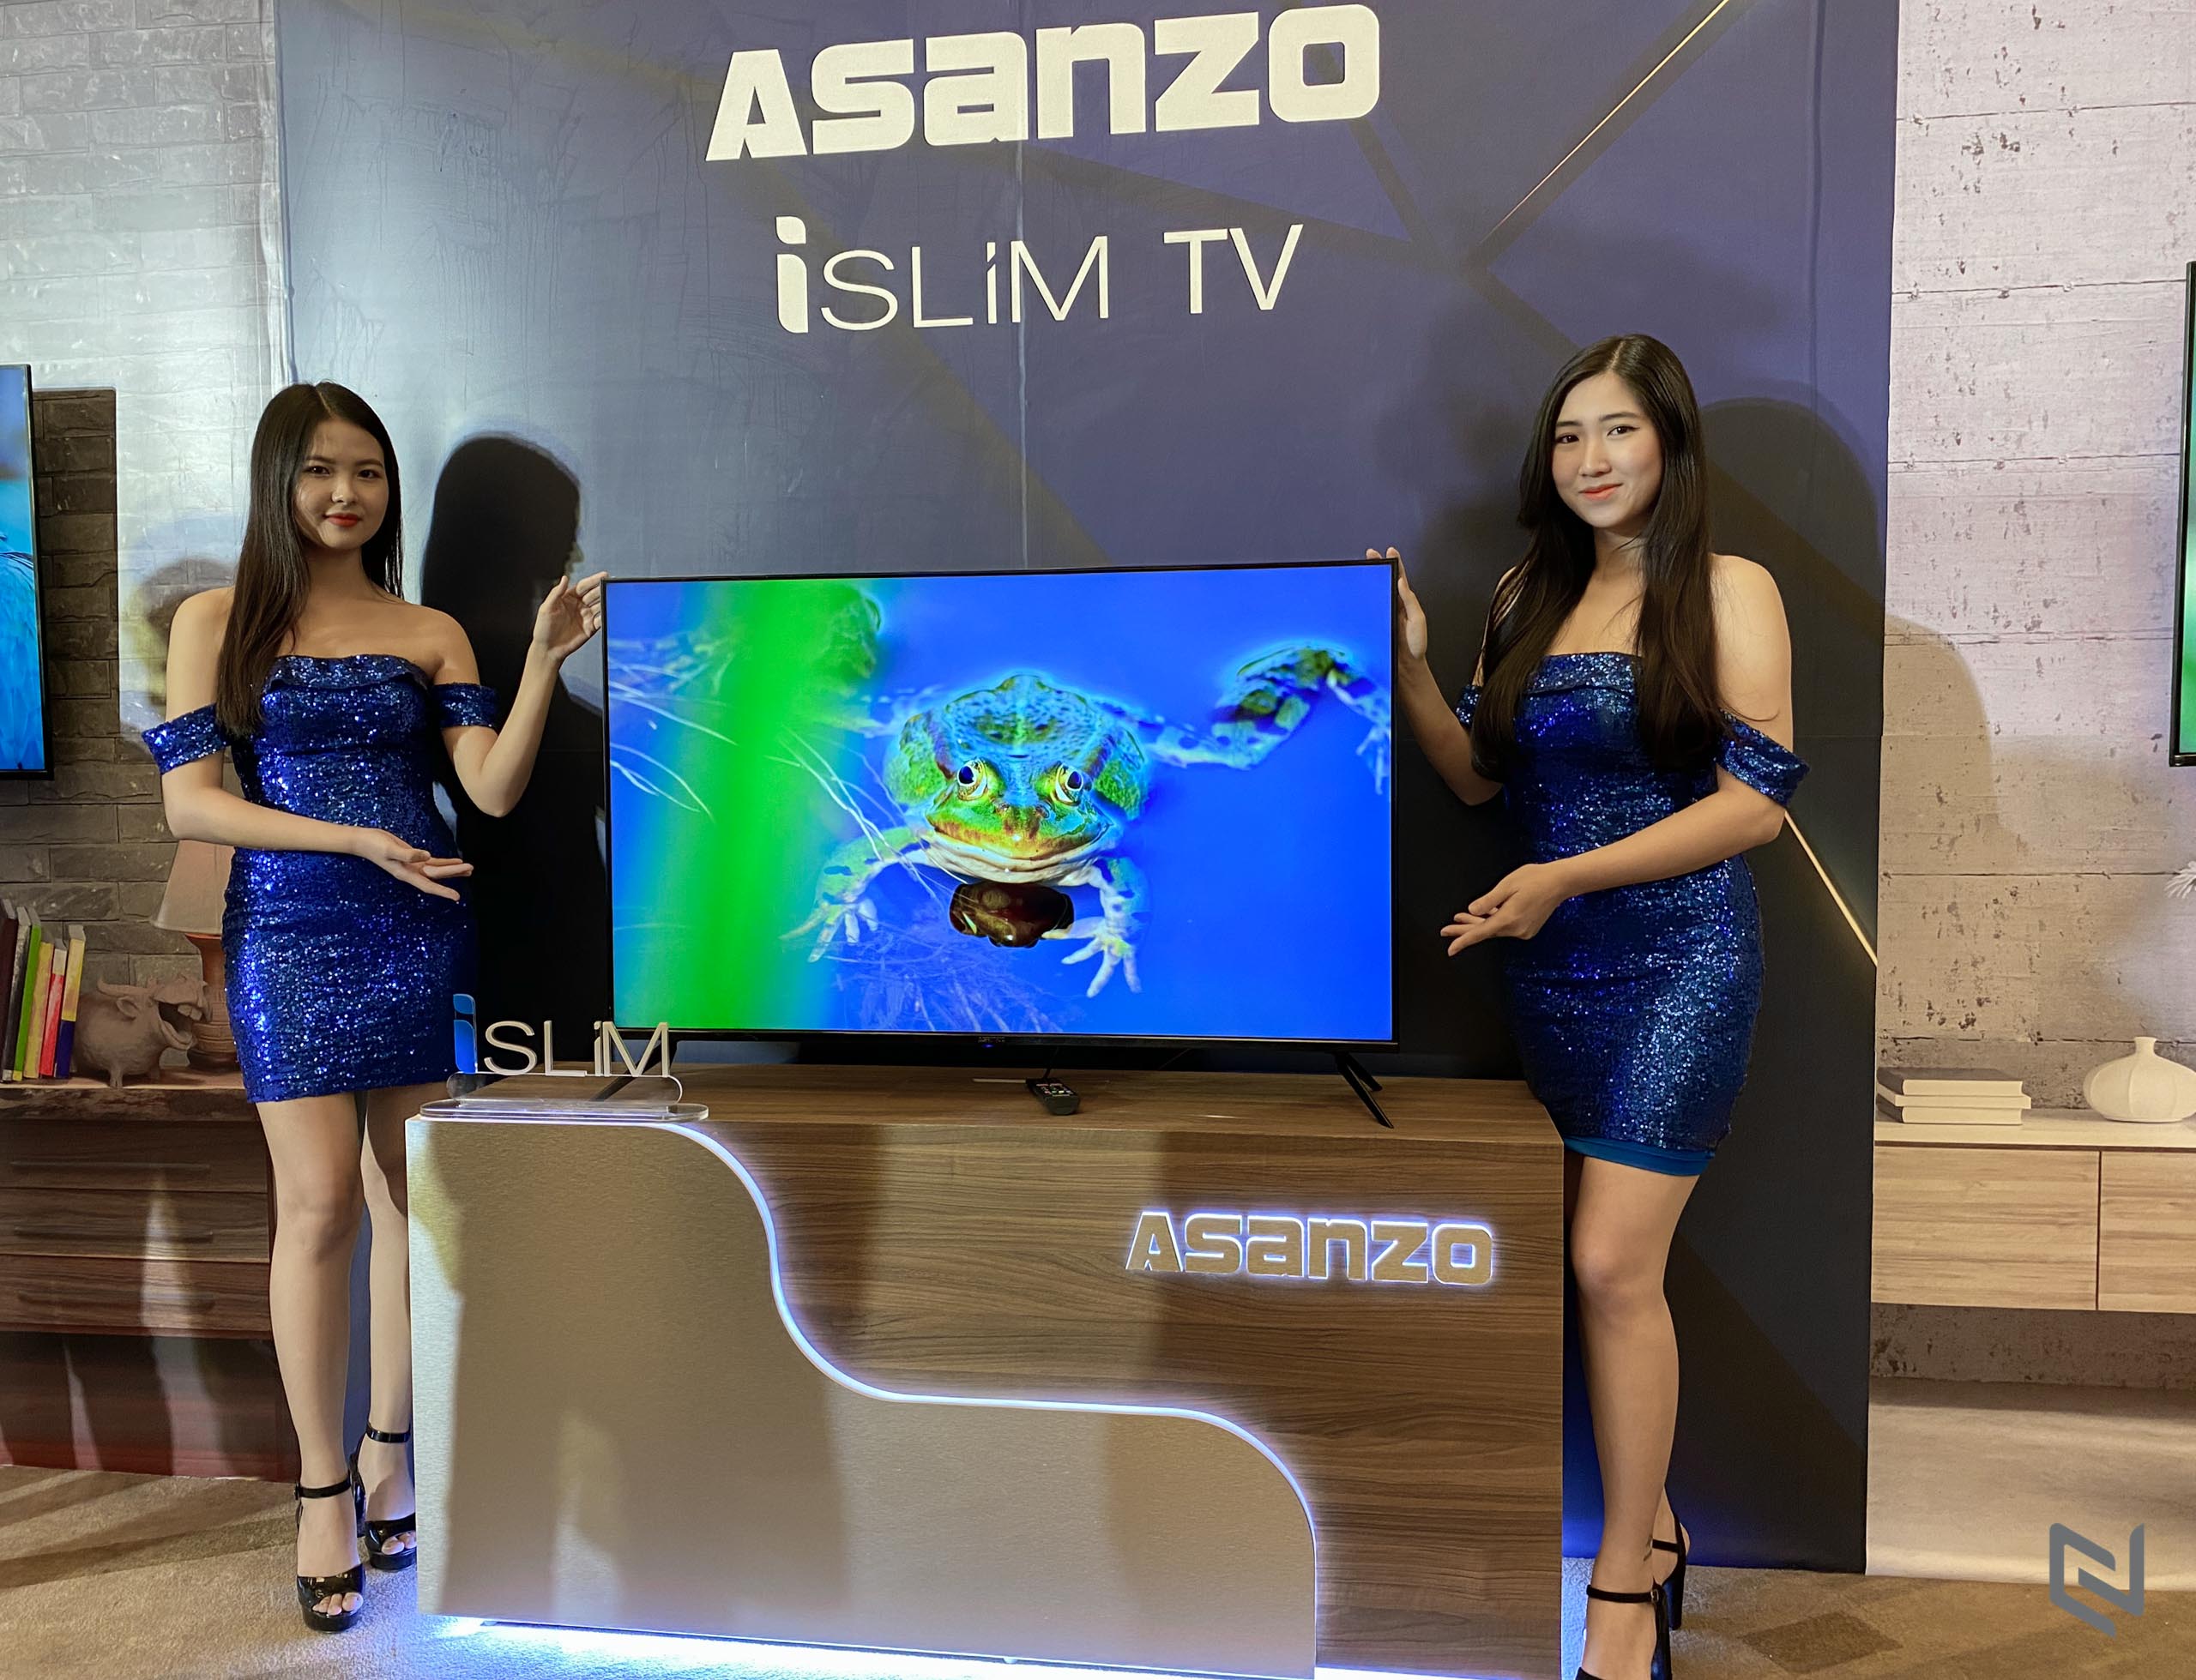 Asanzo ra mắt dòng TV OLED dán tường cùng bộ đôi iSlim thế hệ mới